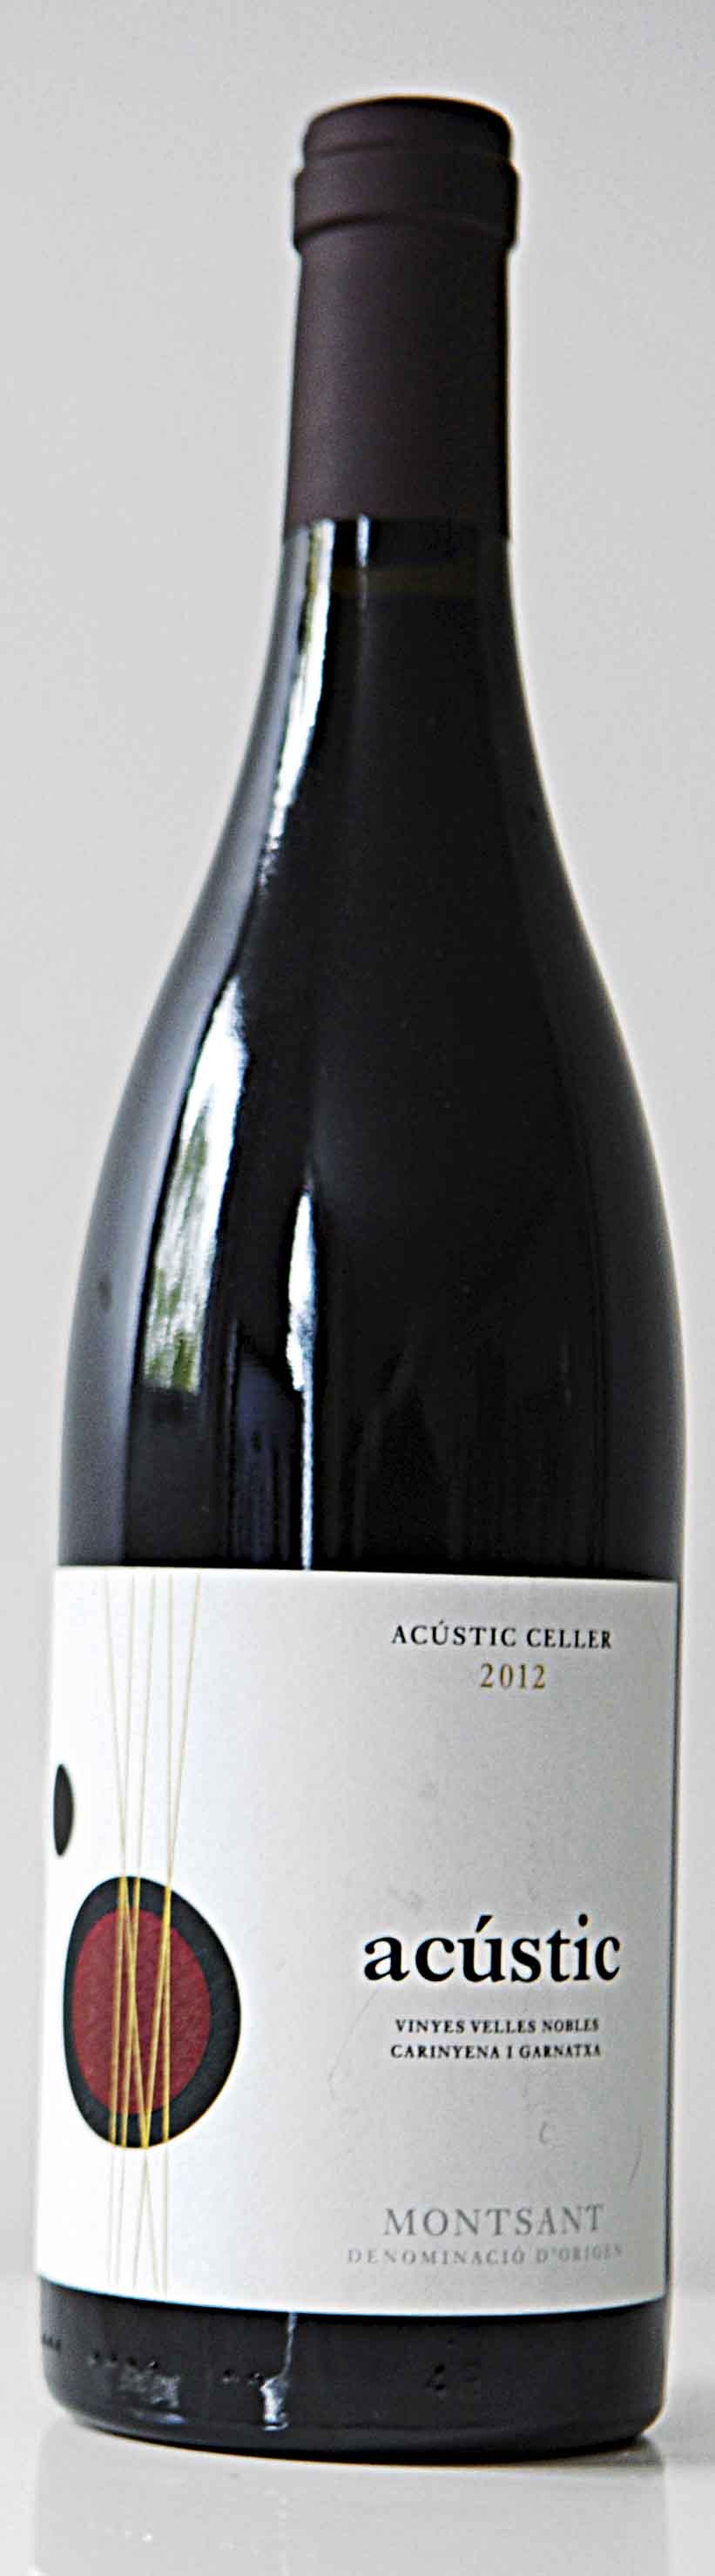 Acustic Celler Vinyes Velles Nobles 2010, Montsant, £14.75